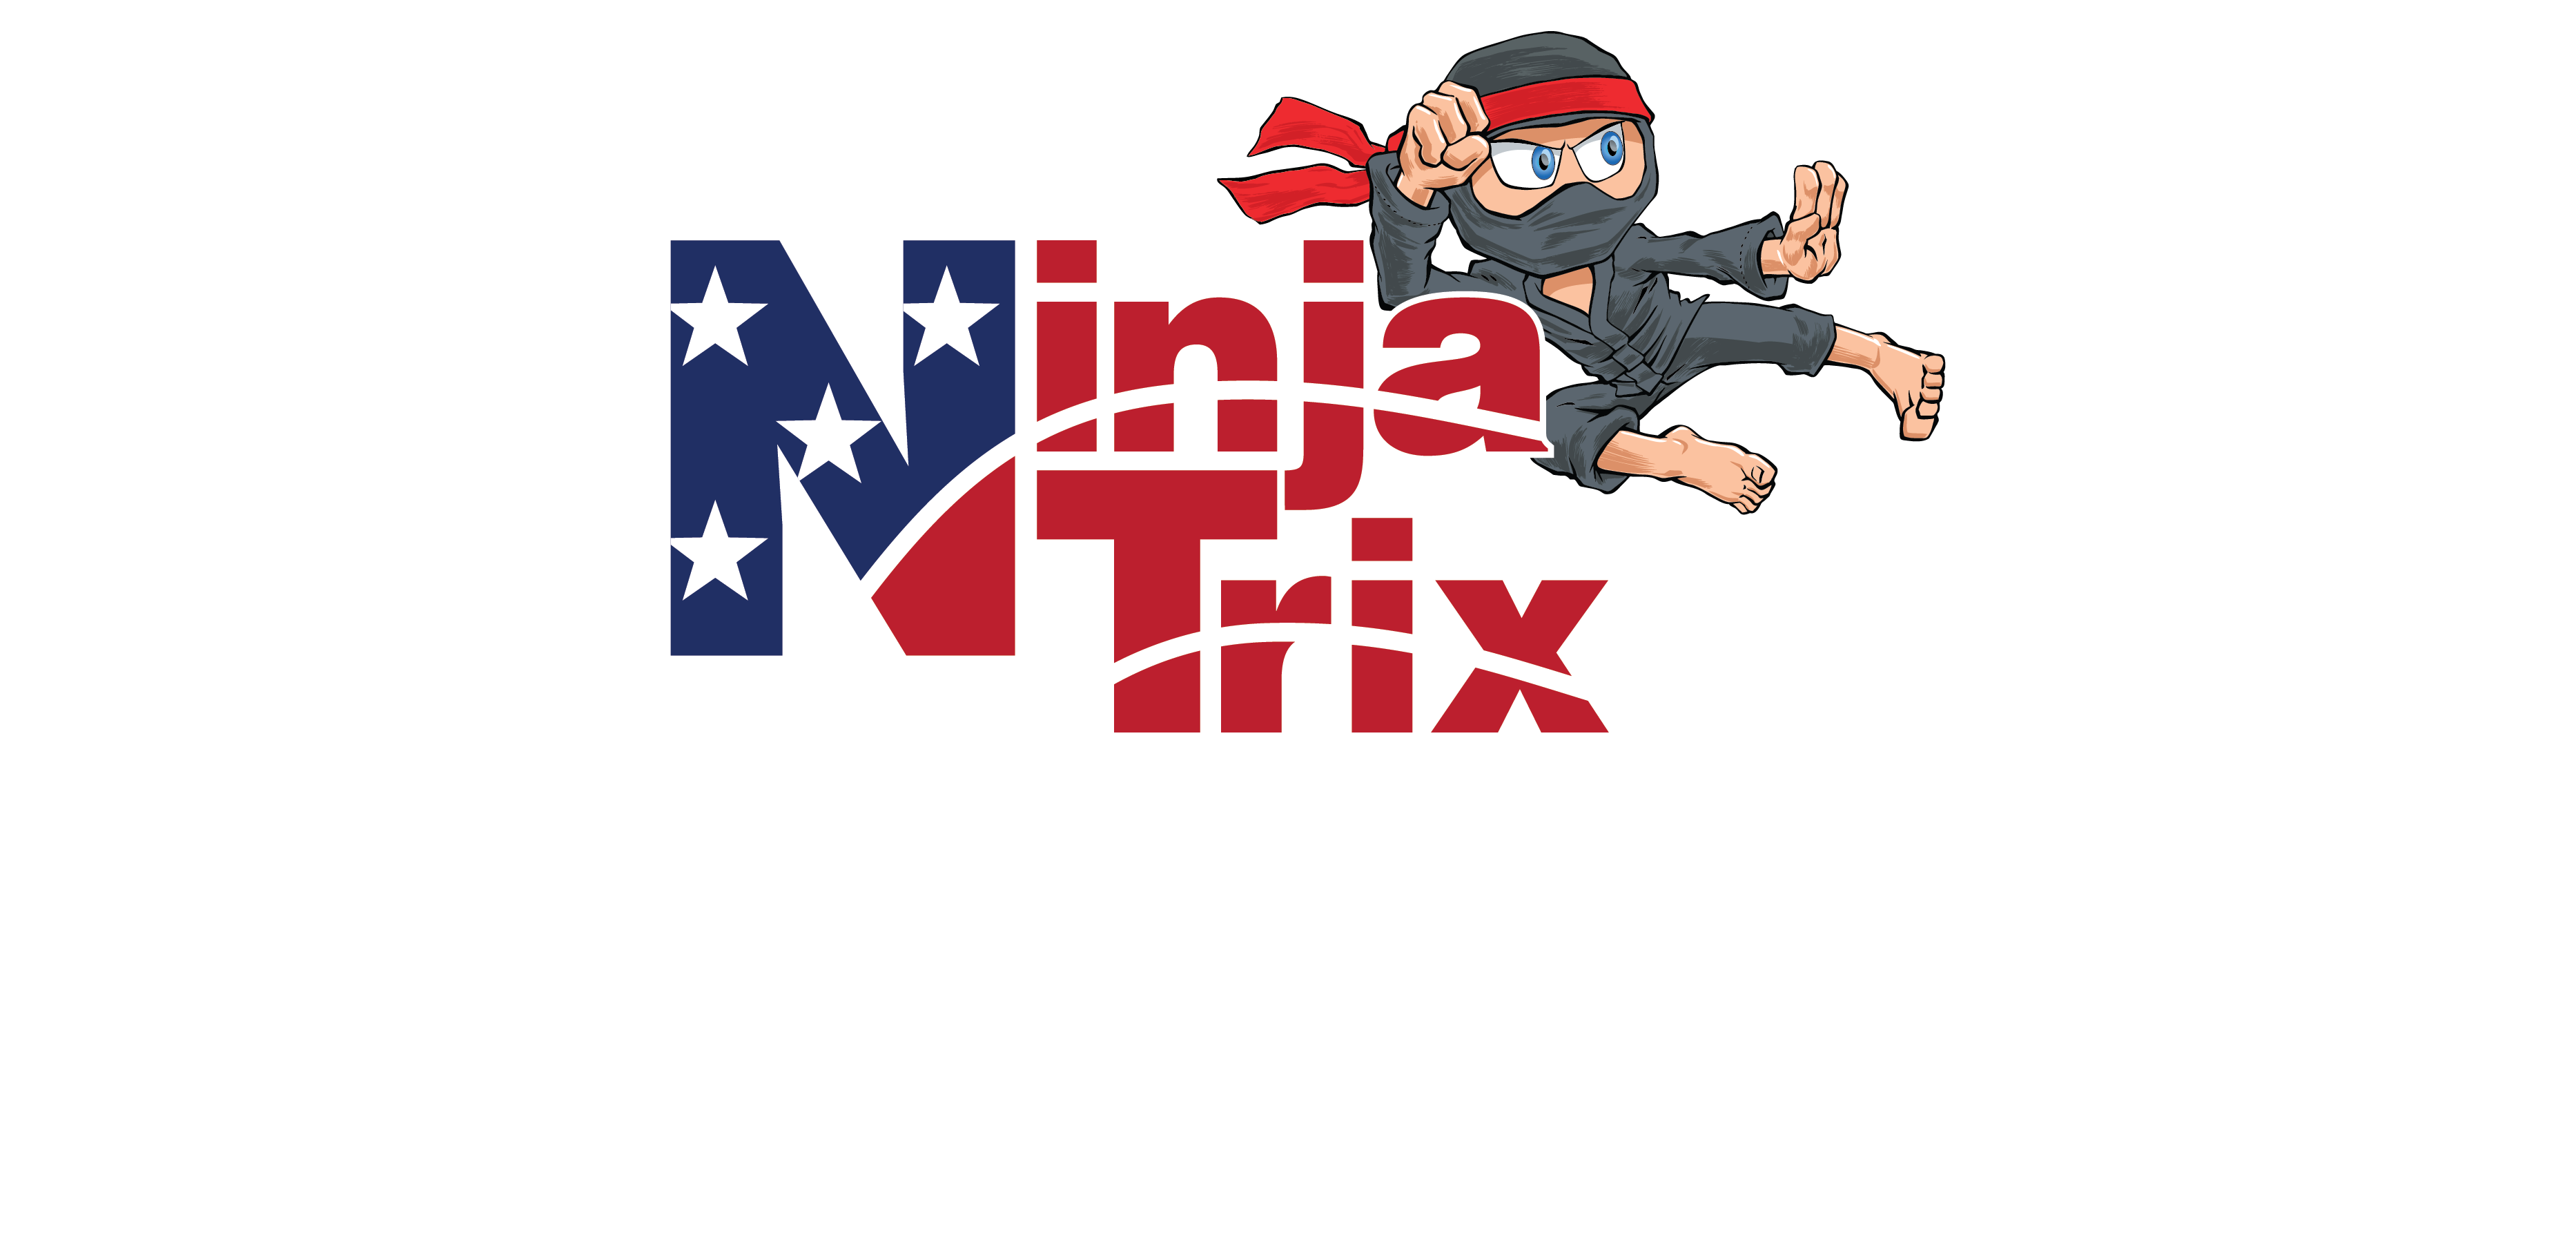 NinjaTrix Franchise